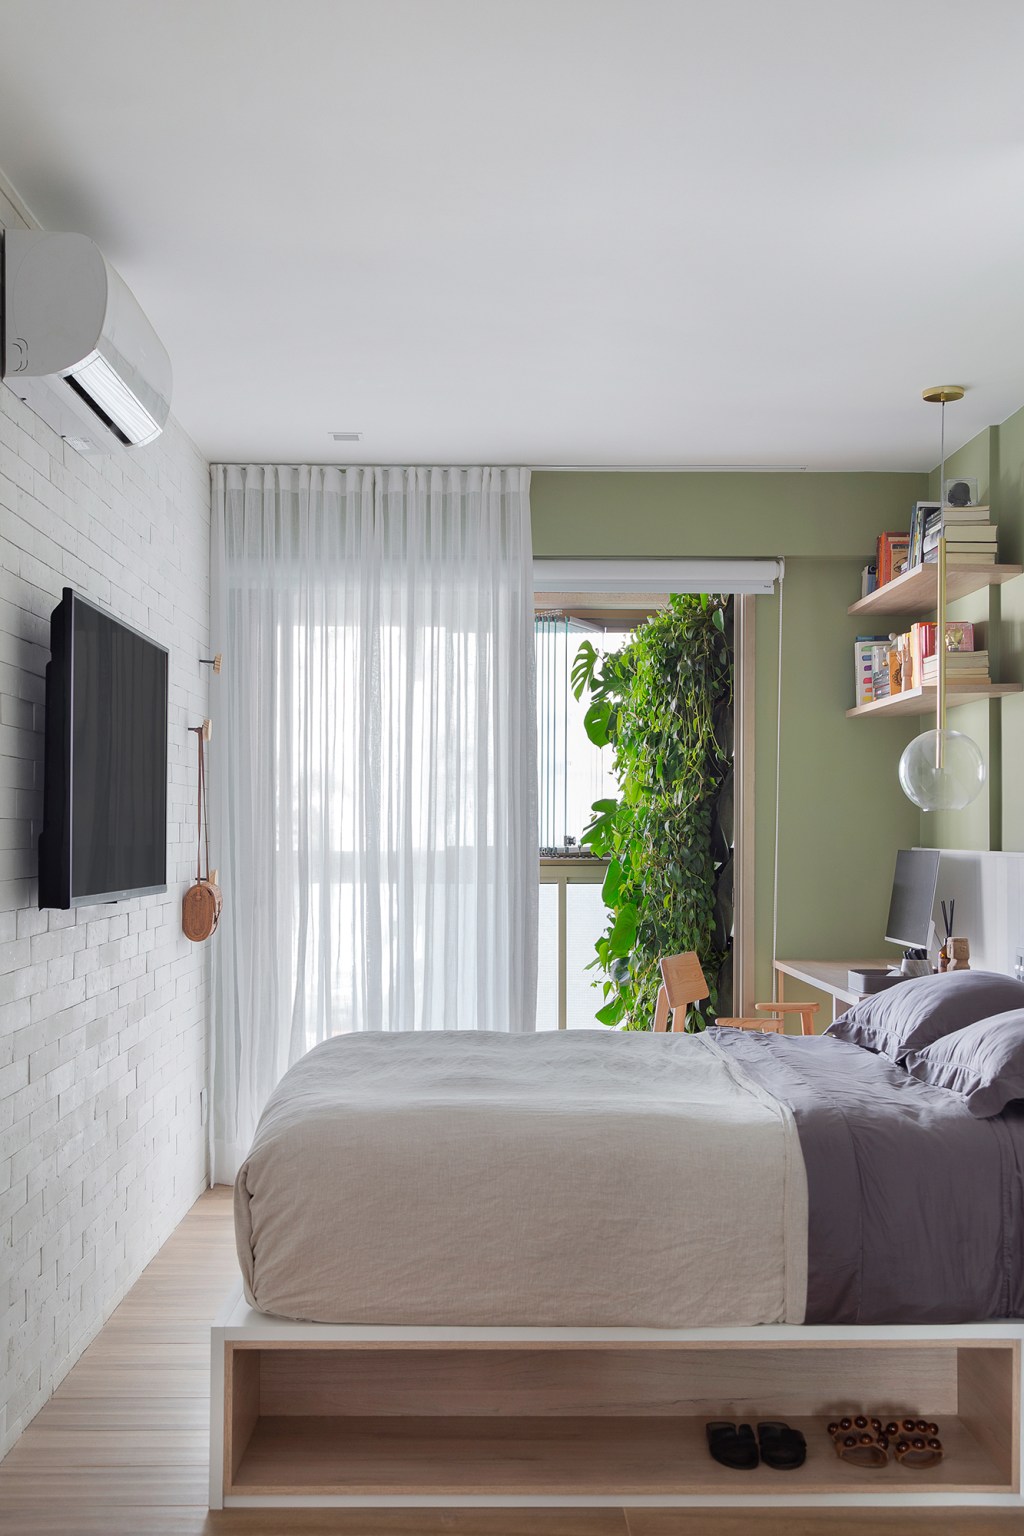 Tons suaves, brises na sala e mistura de pisos marcam apê de 93 m². Projeto de Manoela Fleck. Na foto, quarto com parede verde e neon.